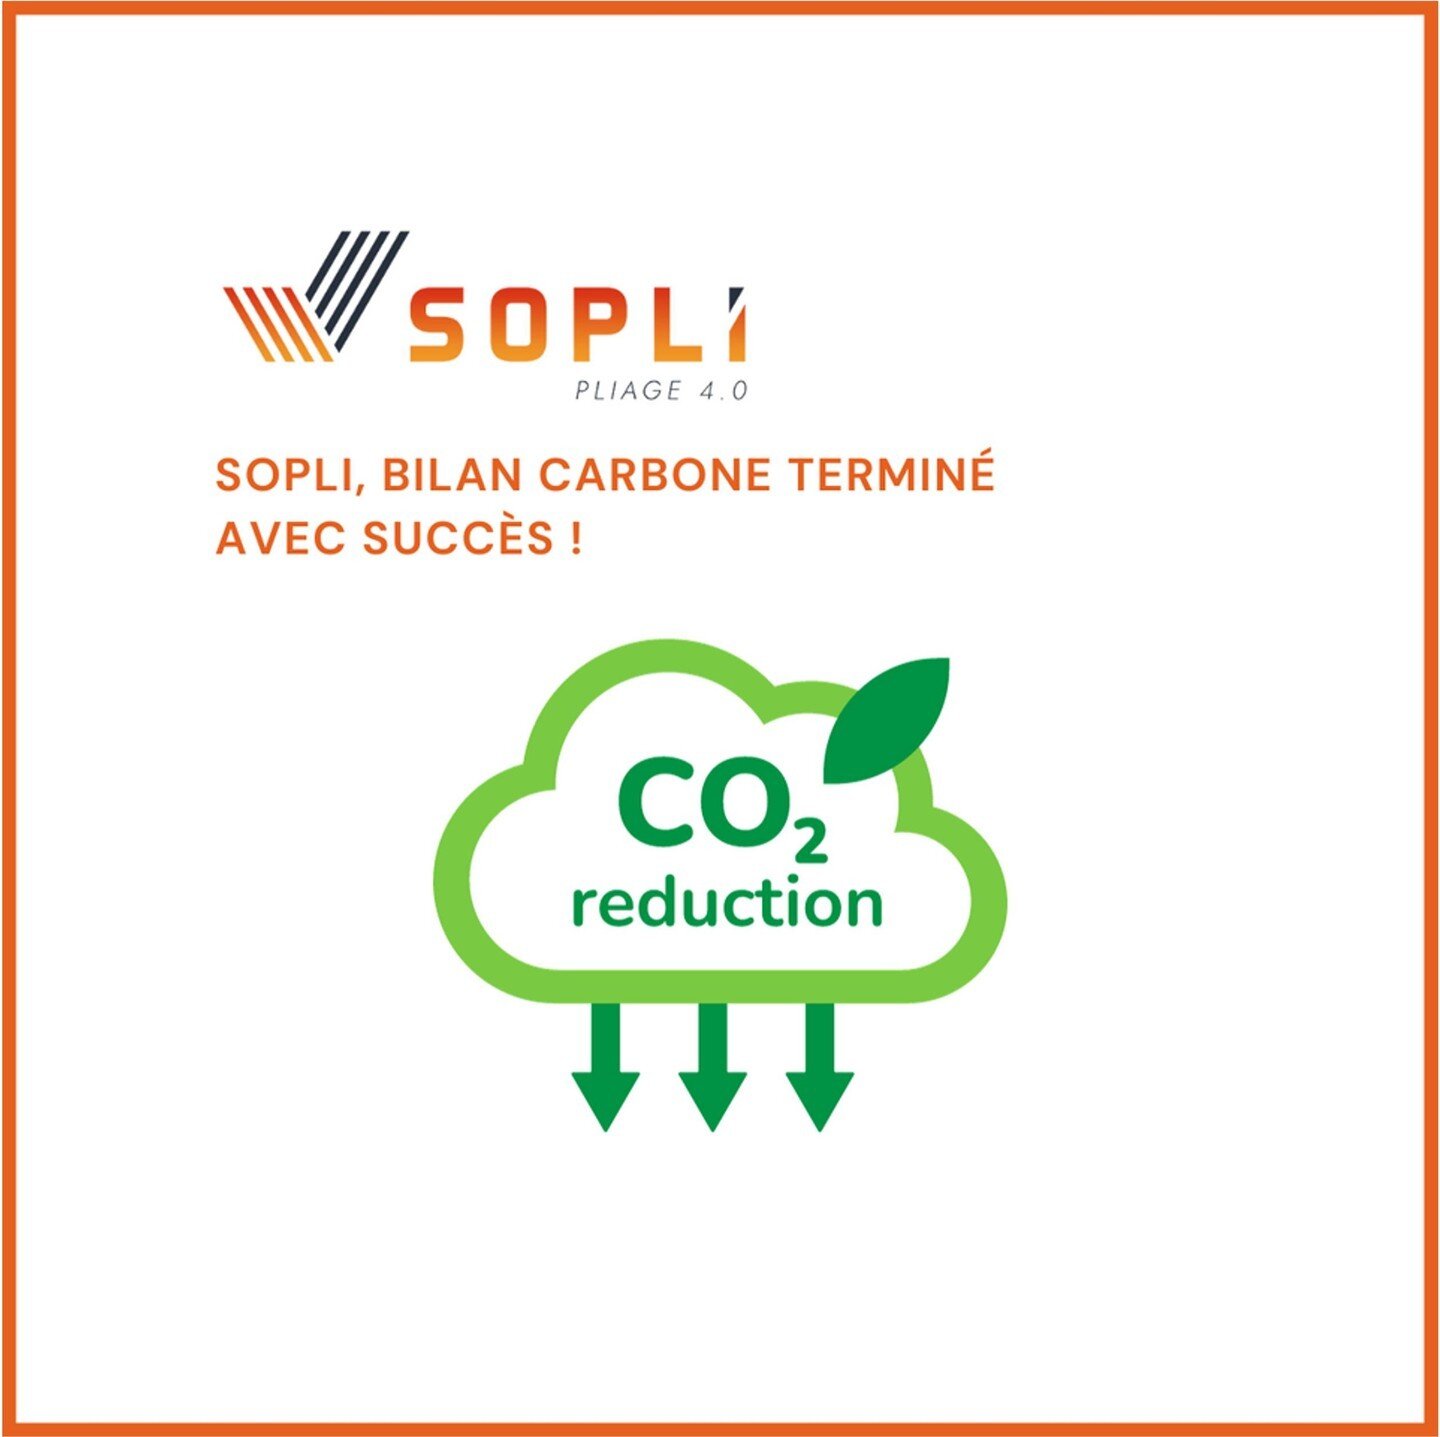 🌱📚 Nous sommes ravi de partager que la SOPLI TEAM vient de r&eacute;aliser son bilan carbone. Cela renforce notre engagement envers un avenir plus vert. Ensemble, nous continuerons &agrave; faire des choix responsables pour notre plan&egrave;te. 🌍